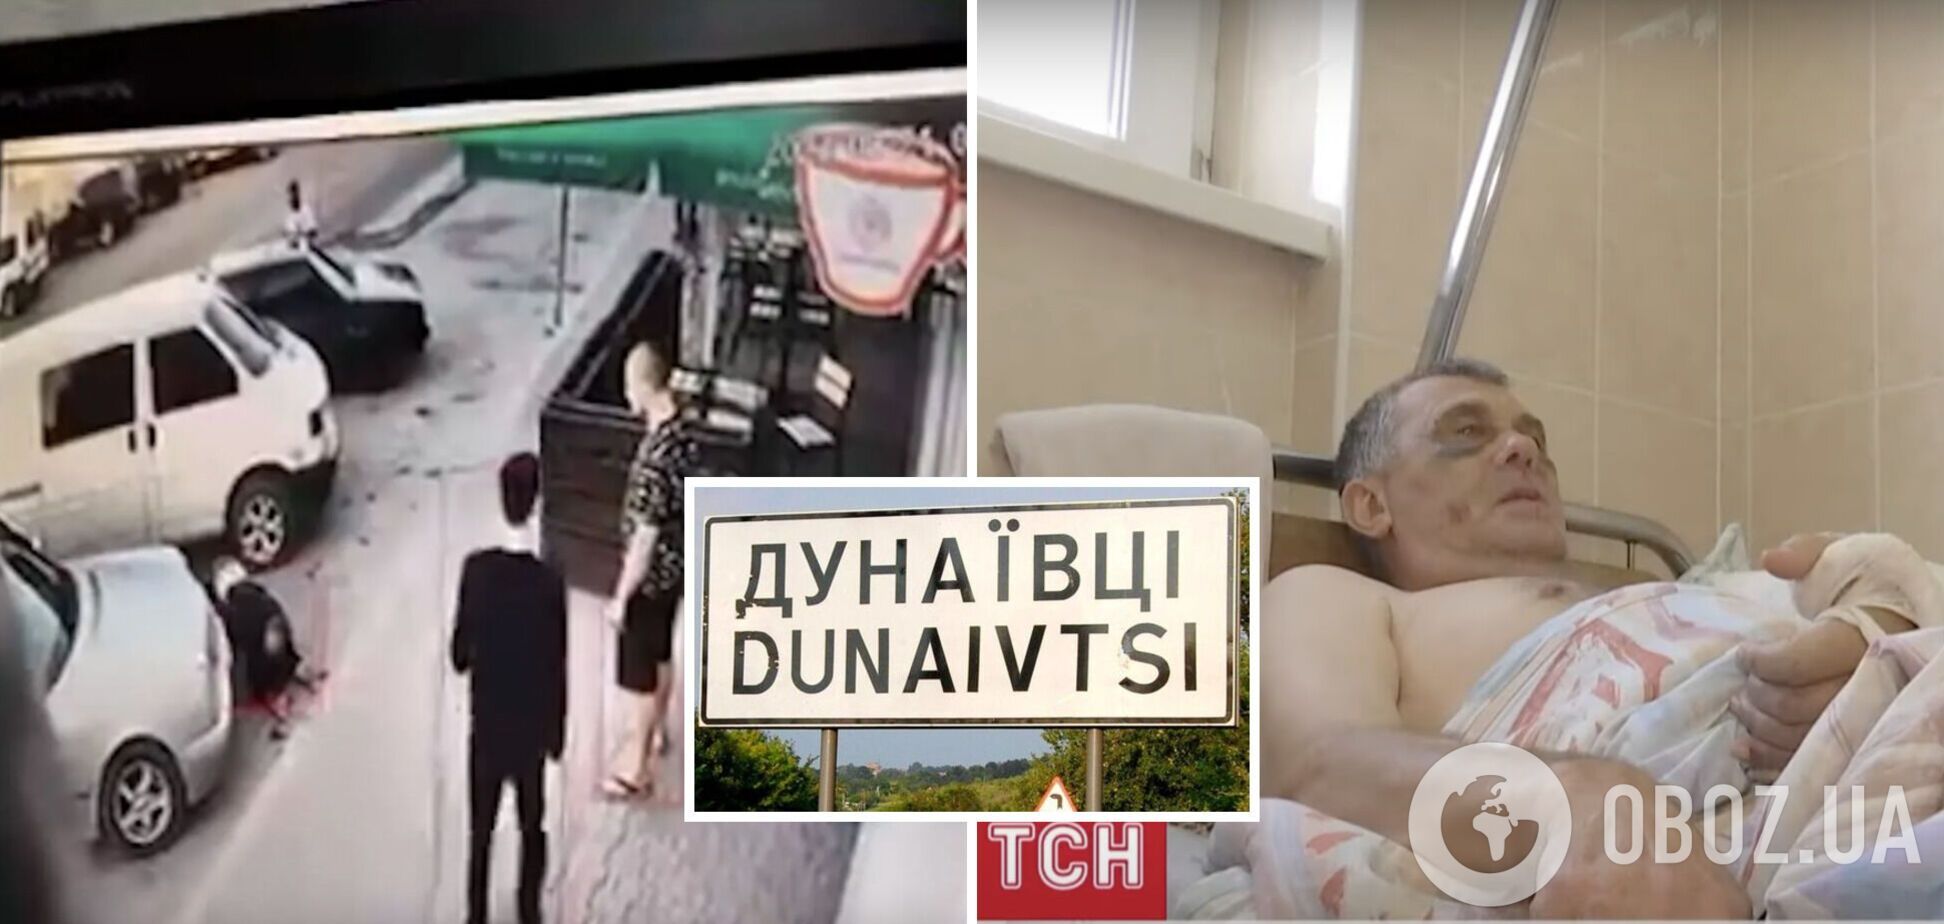 На Хмельниччині любителі 'російського шансону' скалічили чоловіка: нові подробиці. Відео